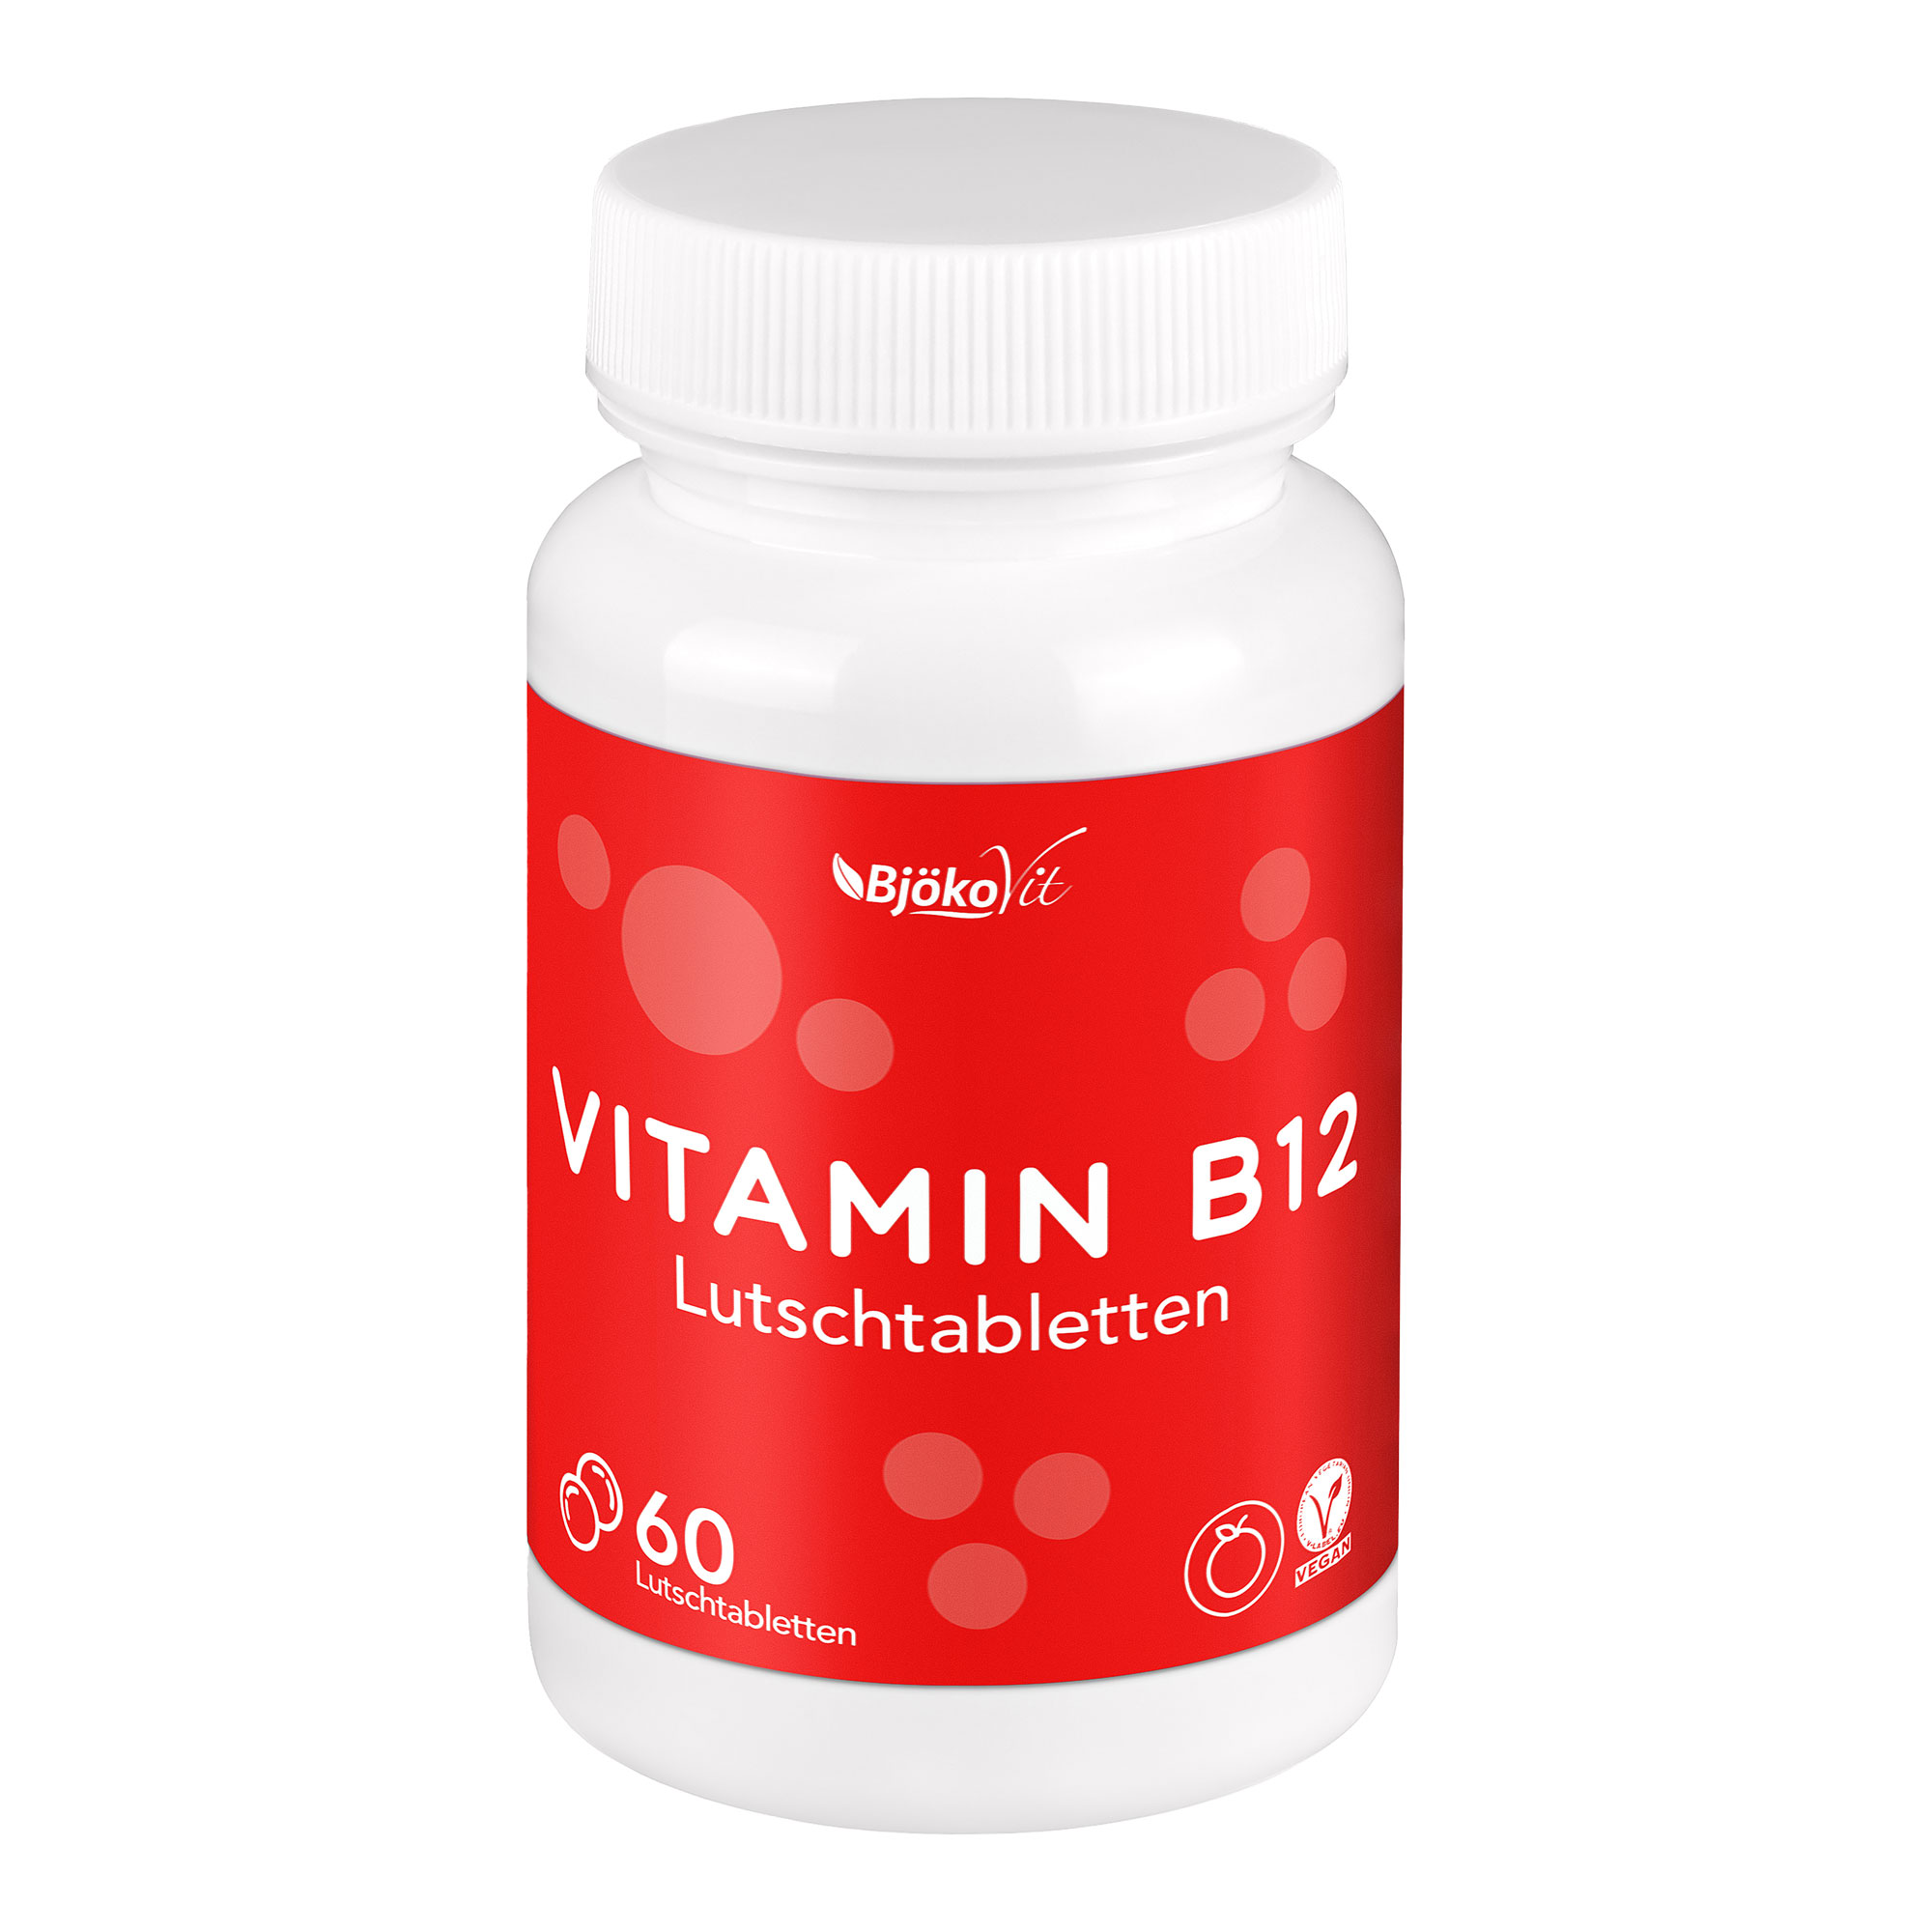 Nahrungsergänzungsmittel mit Vitamin B12. Mit Orangen-Geschmack (vegan).